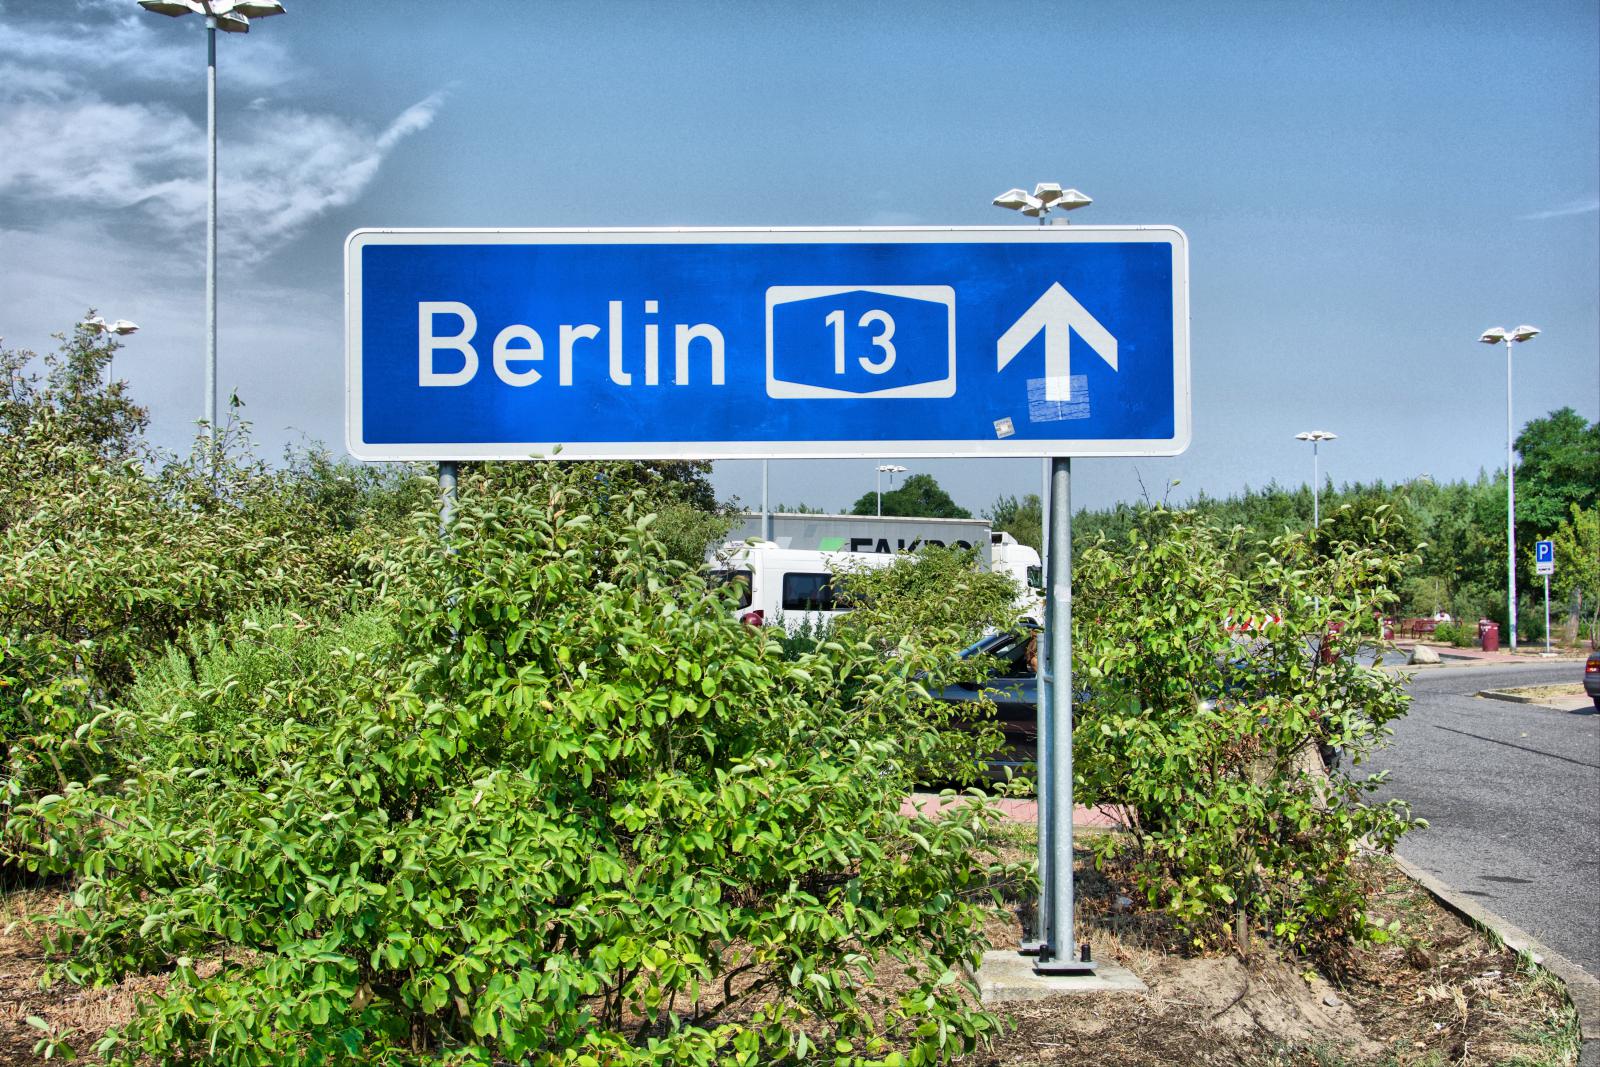 В Берлин стремятся тысячи туристов и иммигрантов, чтобы увидеть или поселиться в одном из самых благополучных городов на Земле. Берлин - город многоликий и противоречивый, он может влюбить в себя или разочаровать за первые же 15 минут пребывания в нем.